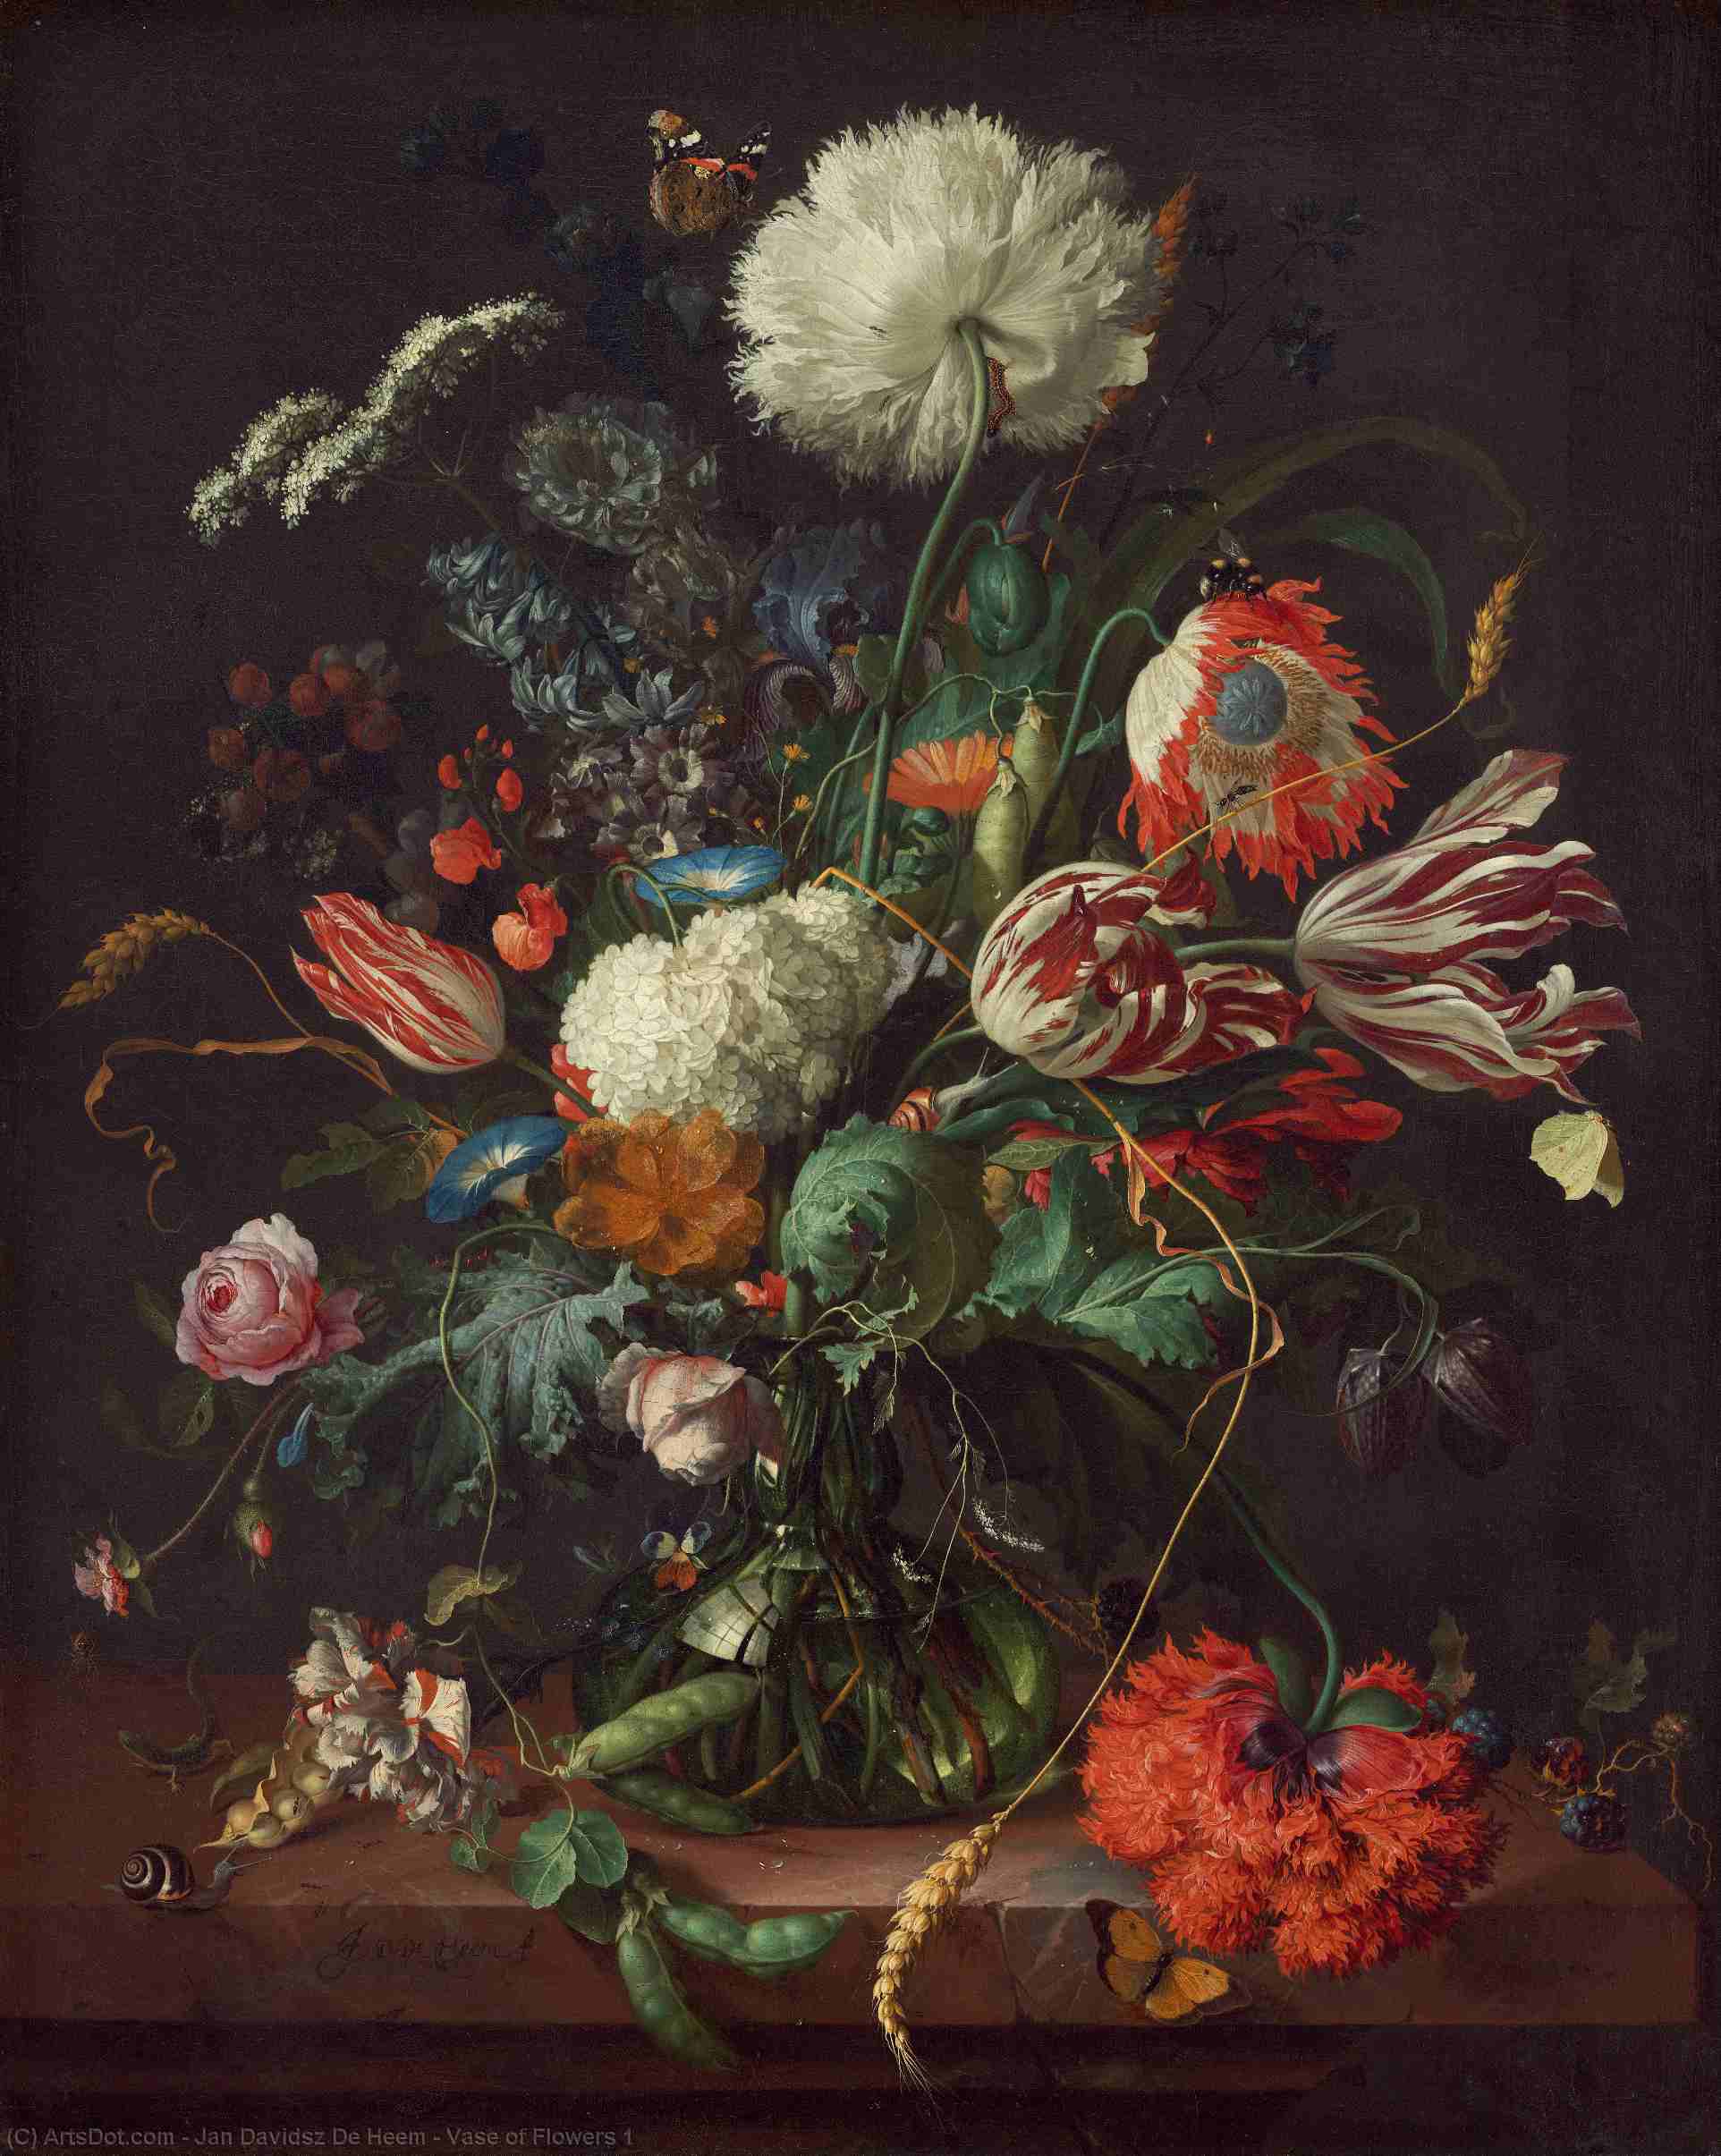 WikiOO.org - Encyclopedia of Fine Arts - Schilderen, Artwork Jan Davidsz De Heem - Vase of Flowers 1